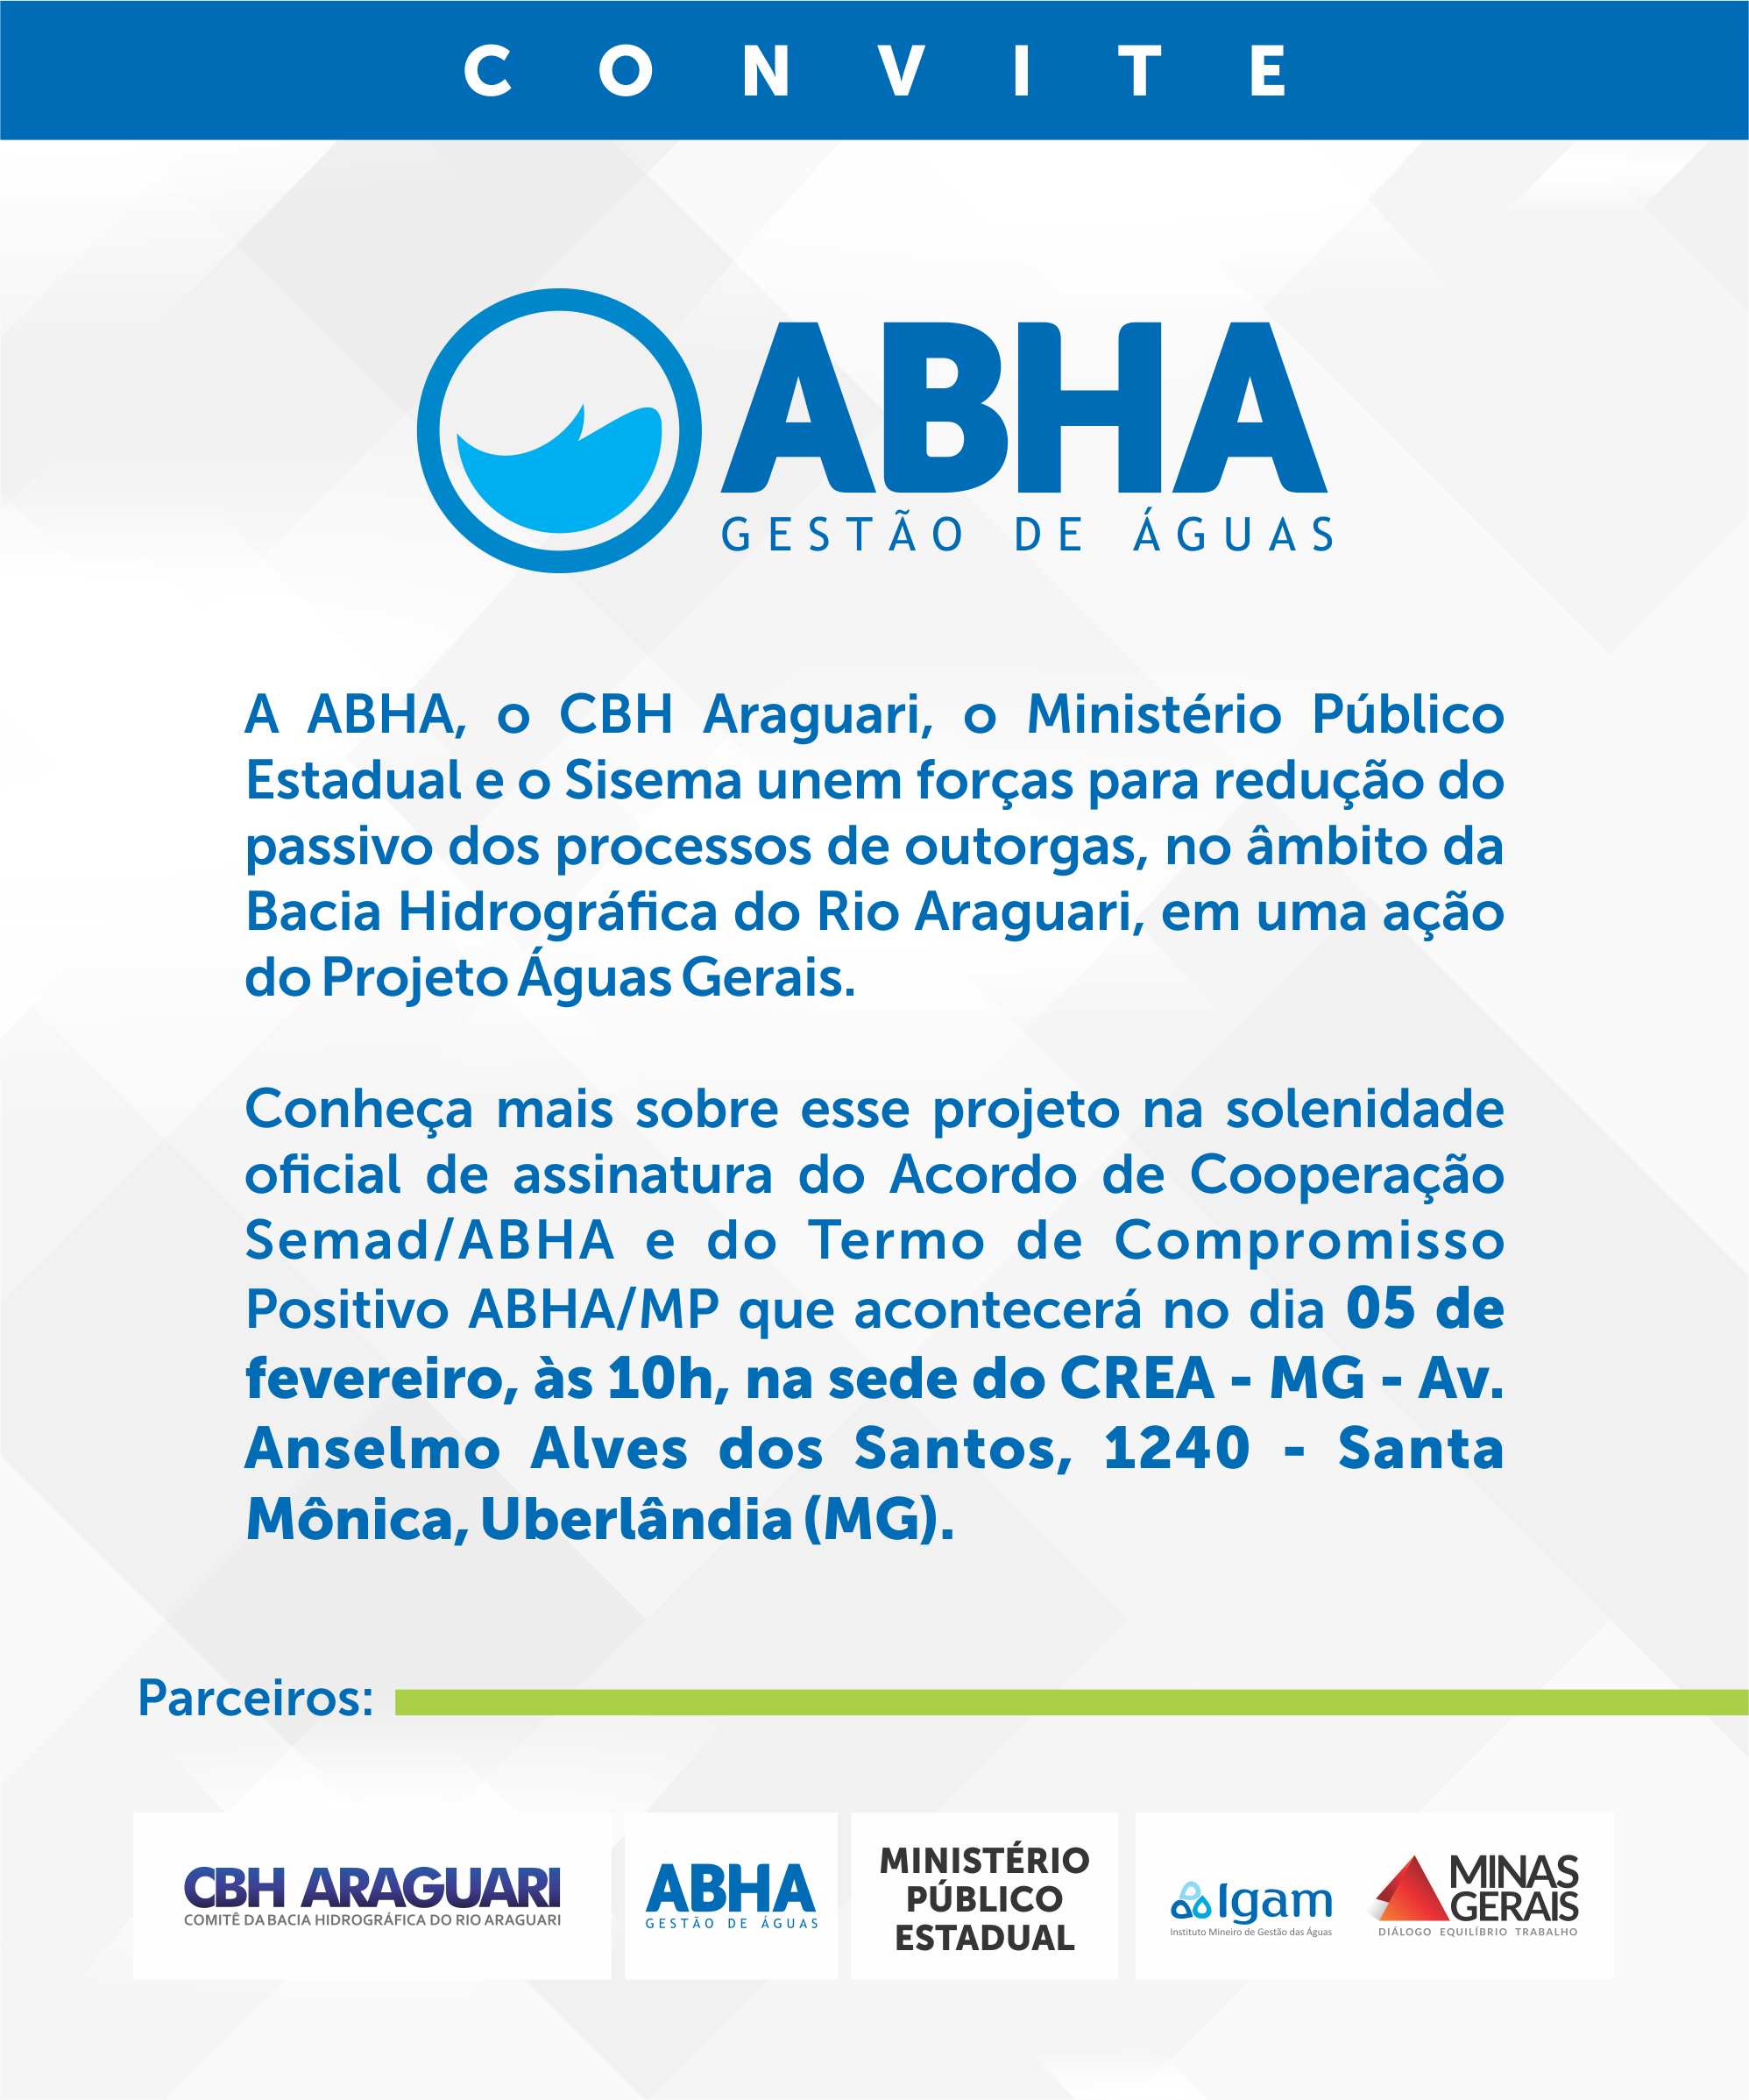 Convite - Assinatura do Acordo de Cooperação Semad/ABHA e do Termo de Compromisso Positivo ABHA/MP